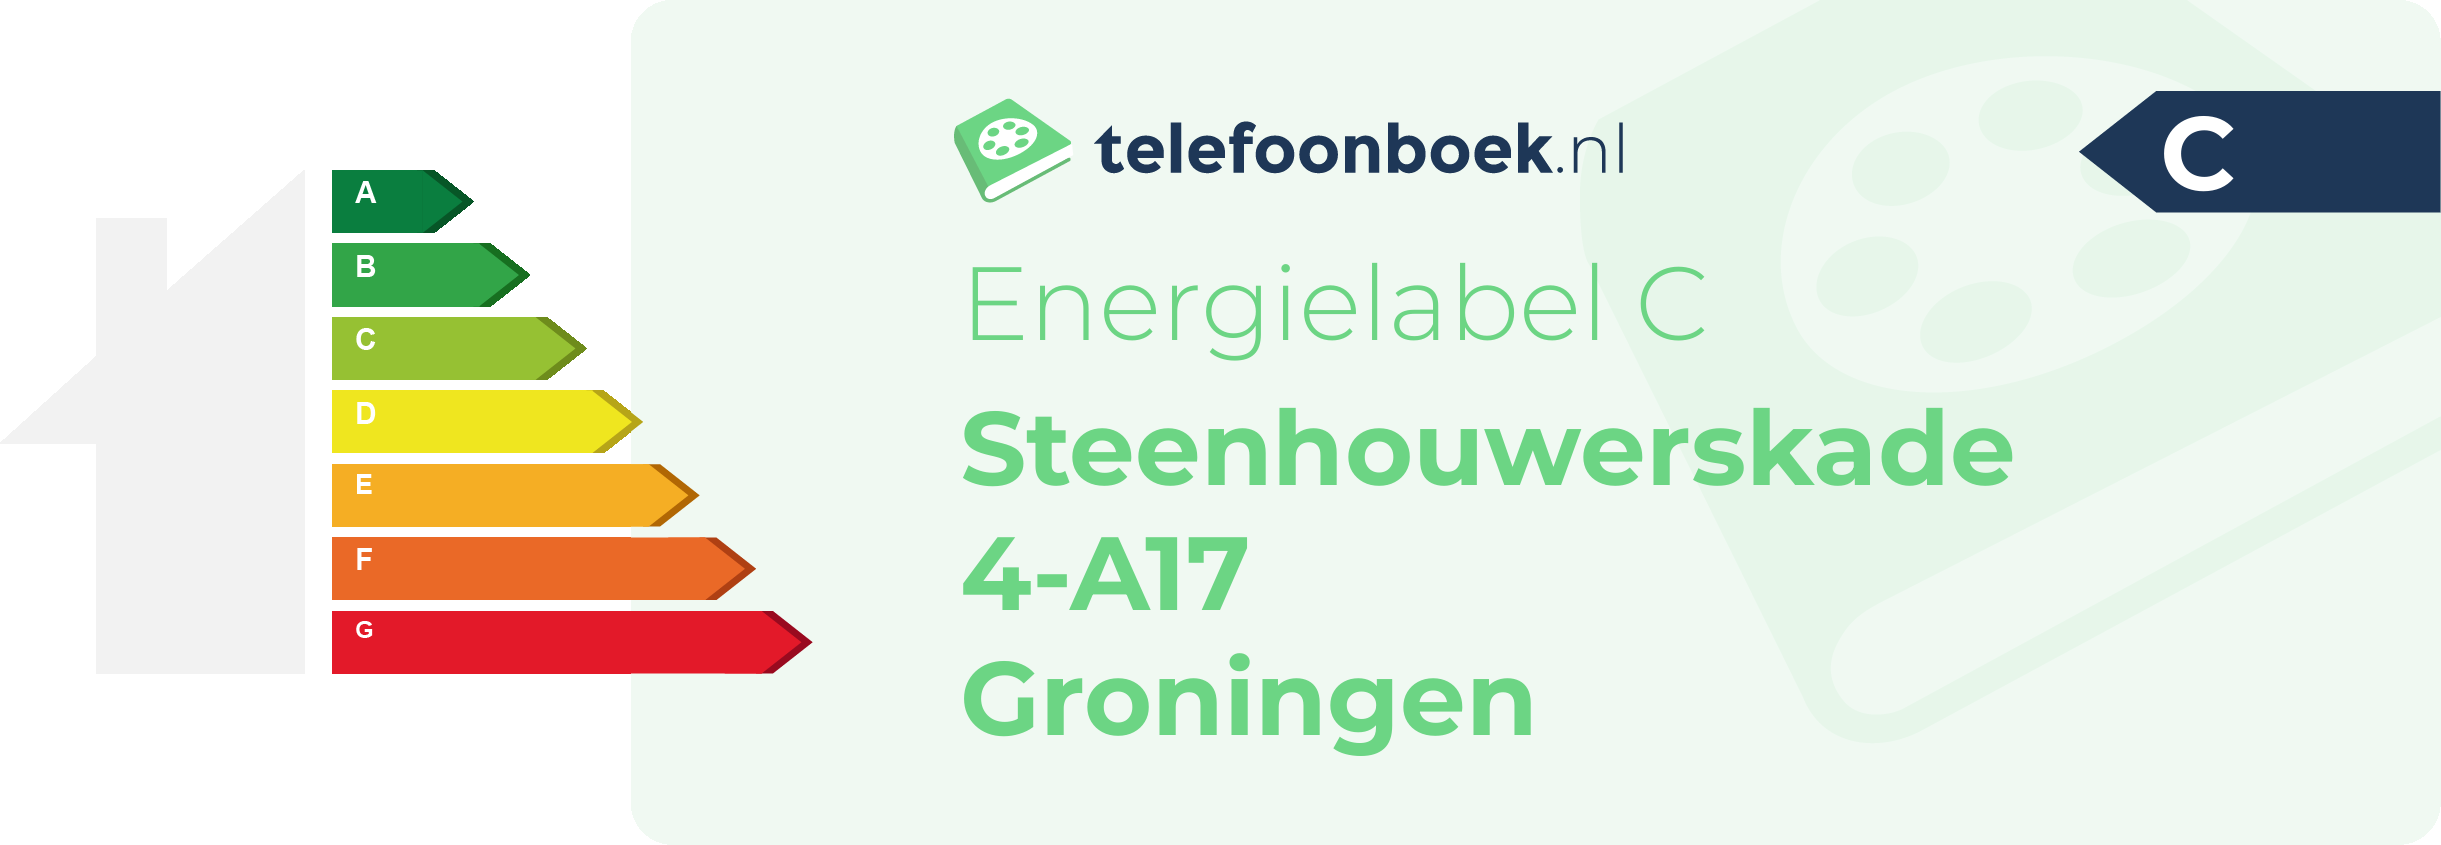 Energielabel Steenhouwerskade 4-A17 Groningen